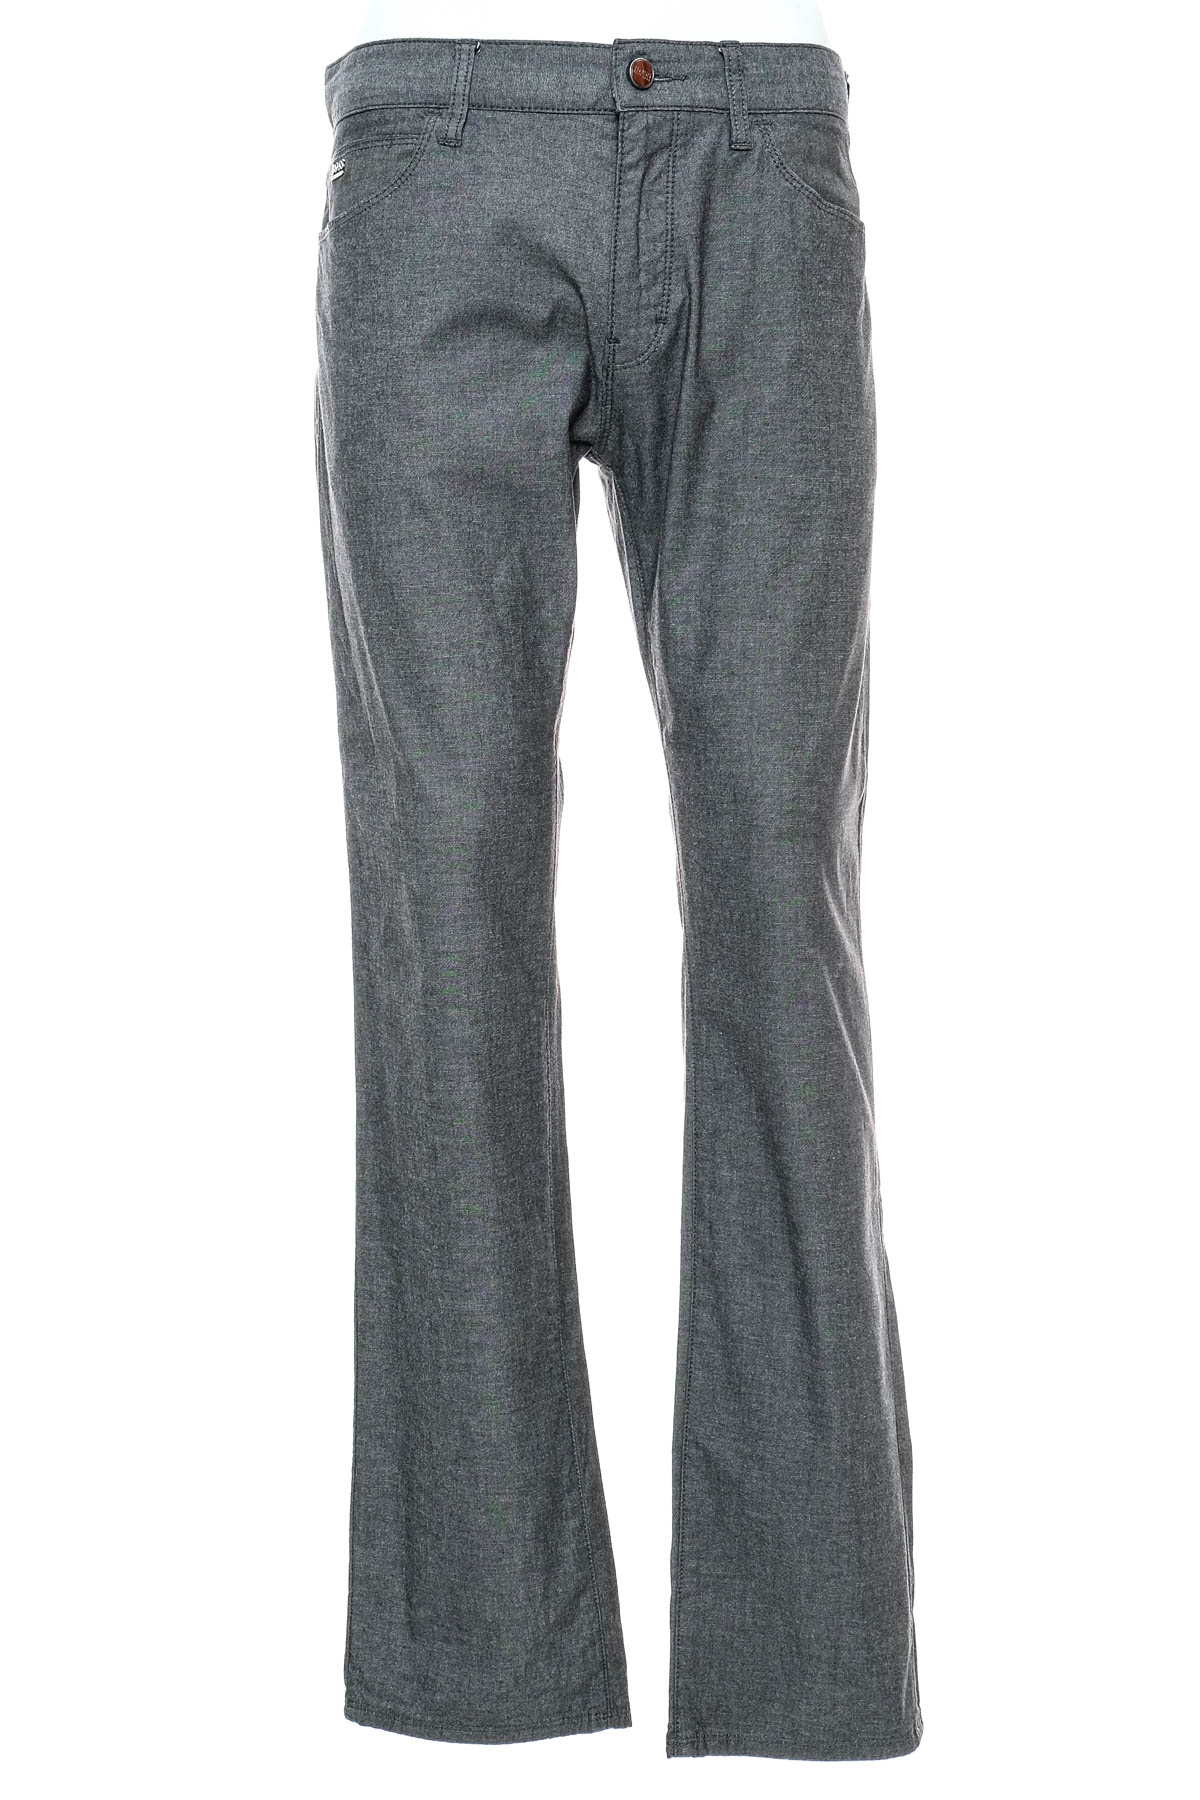 Men's trousers - HUGO BOSS - 0